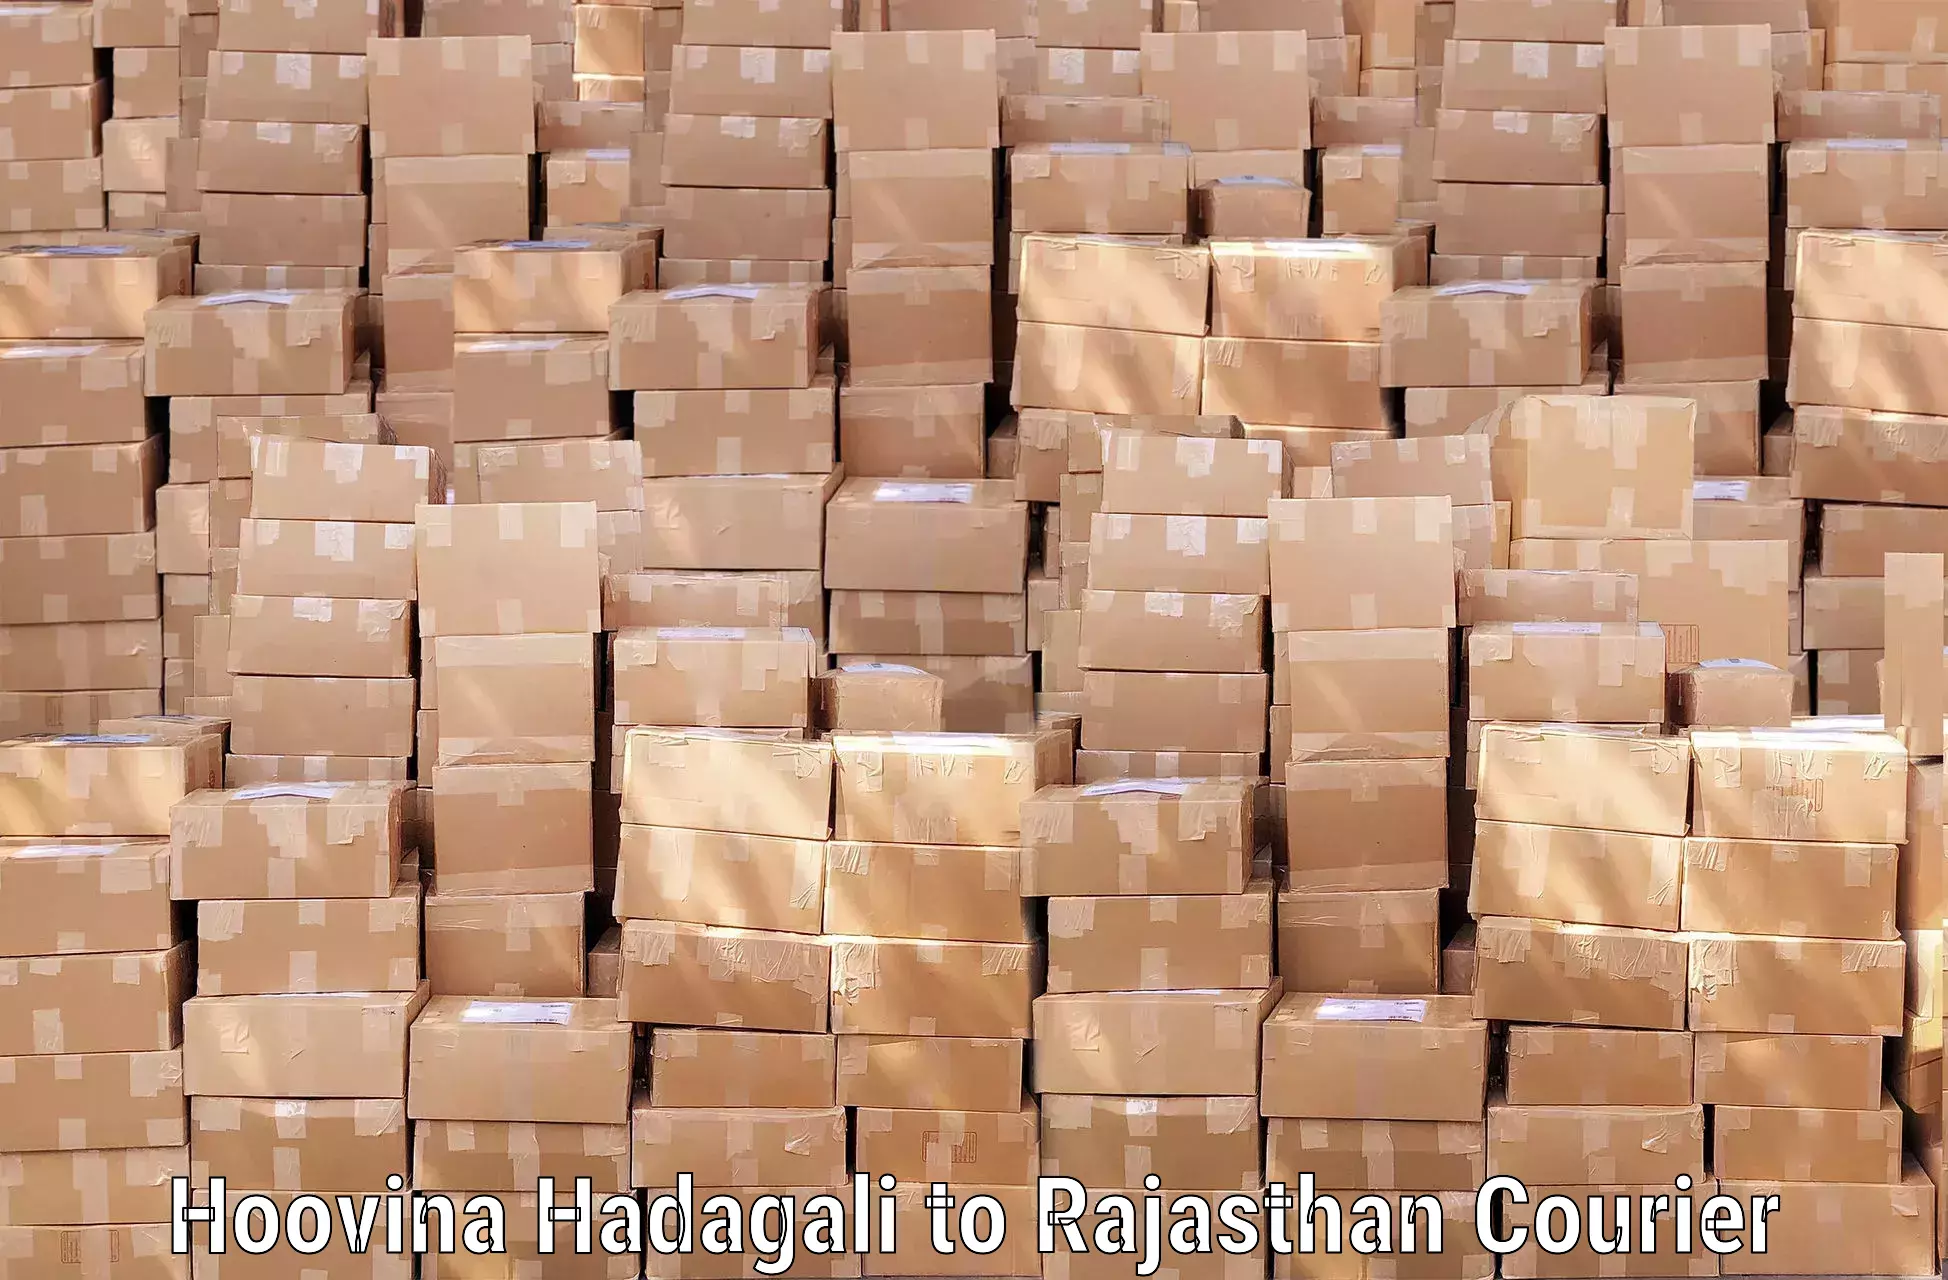 Luggage transport service Hoovina Hadagali to Rajasthan